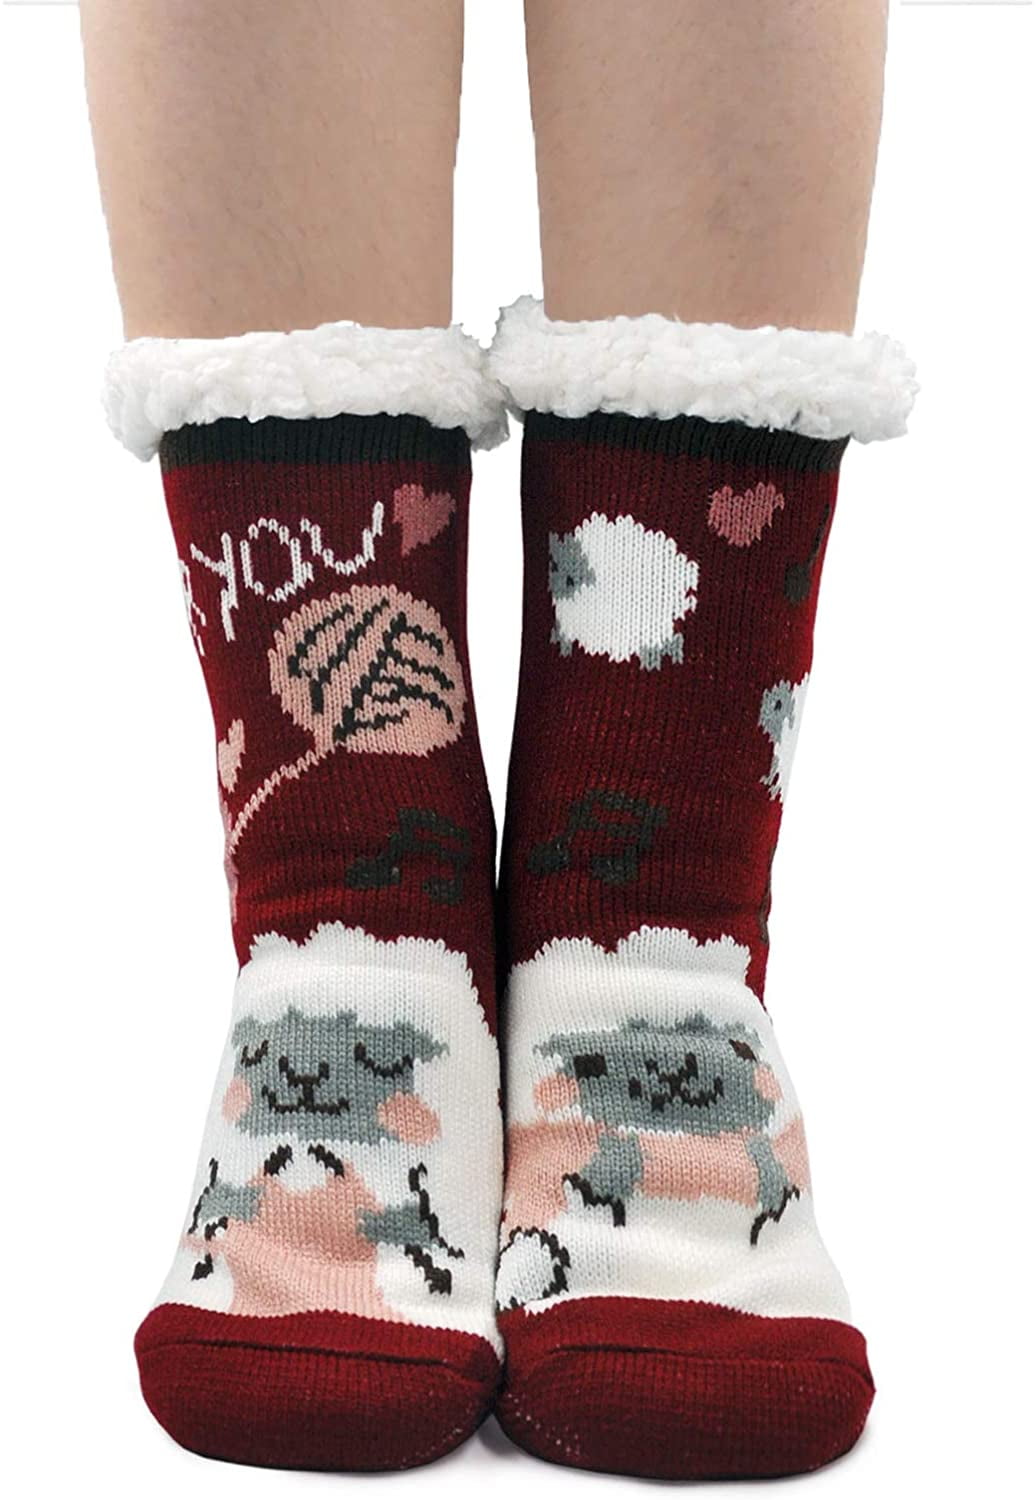 ZFSOCK Slipper Socks for Women Winter Warm Fuzzy Sherpa Socks Non Slip ...